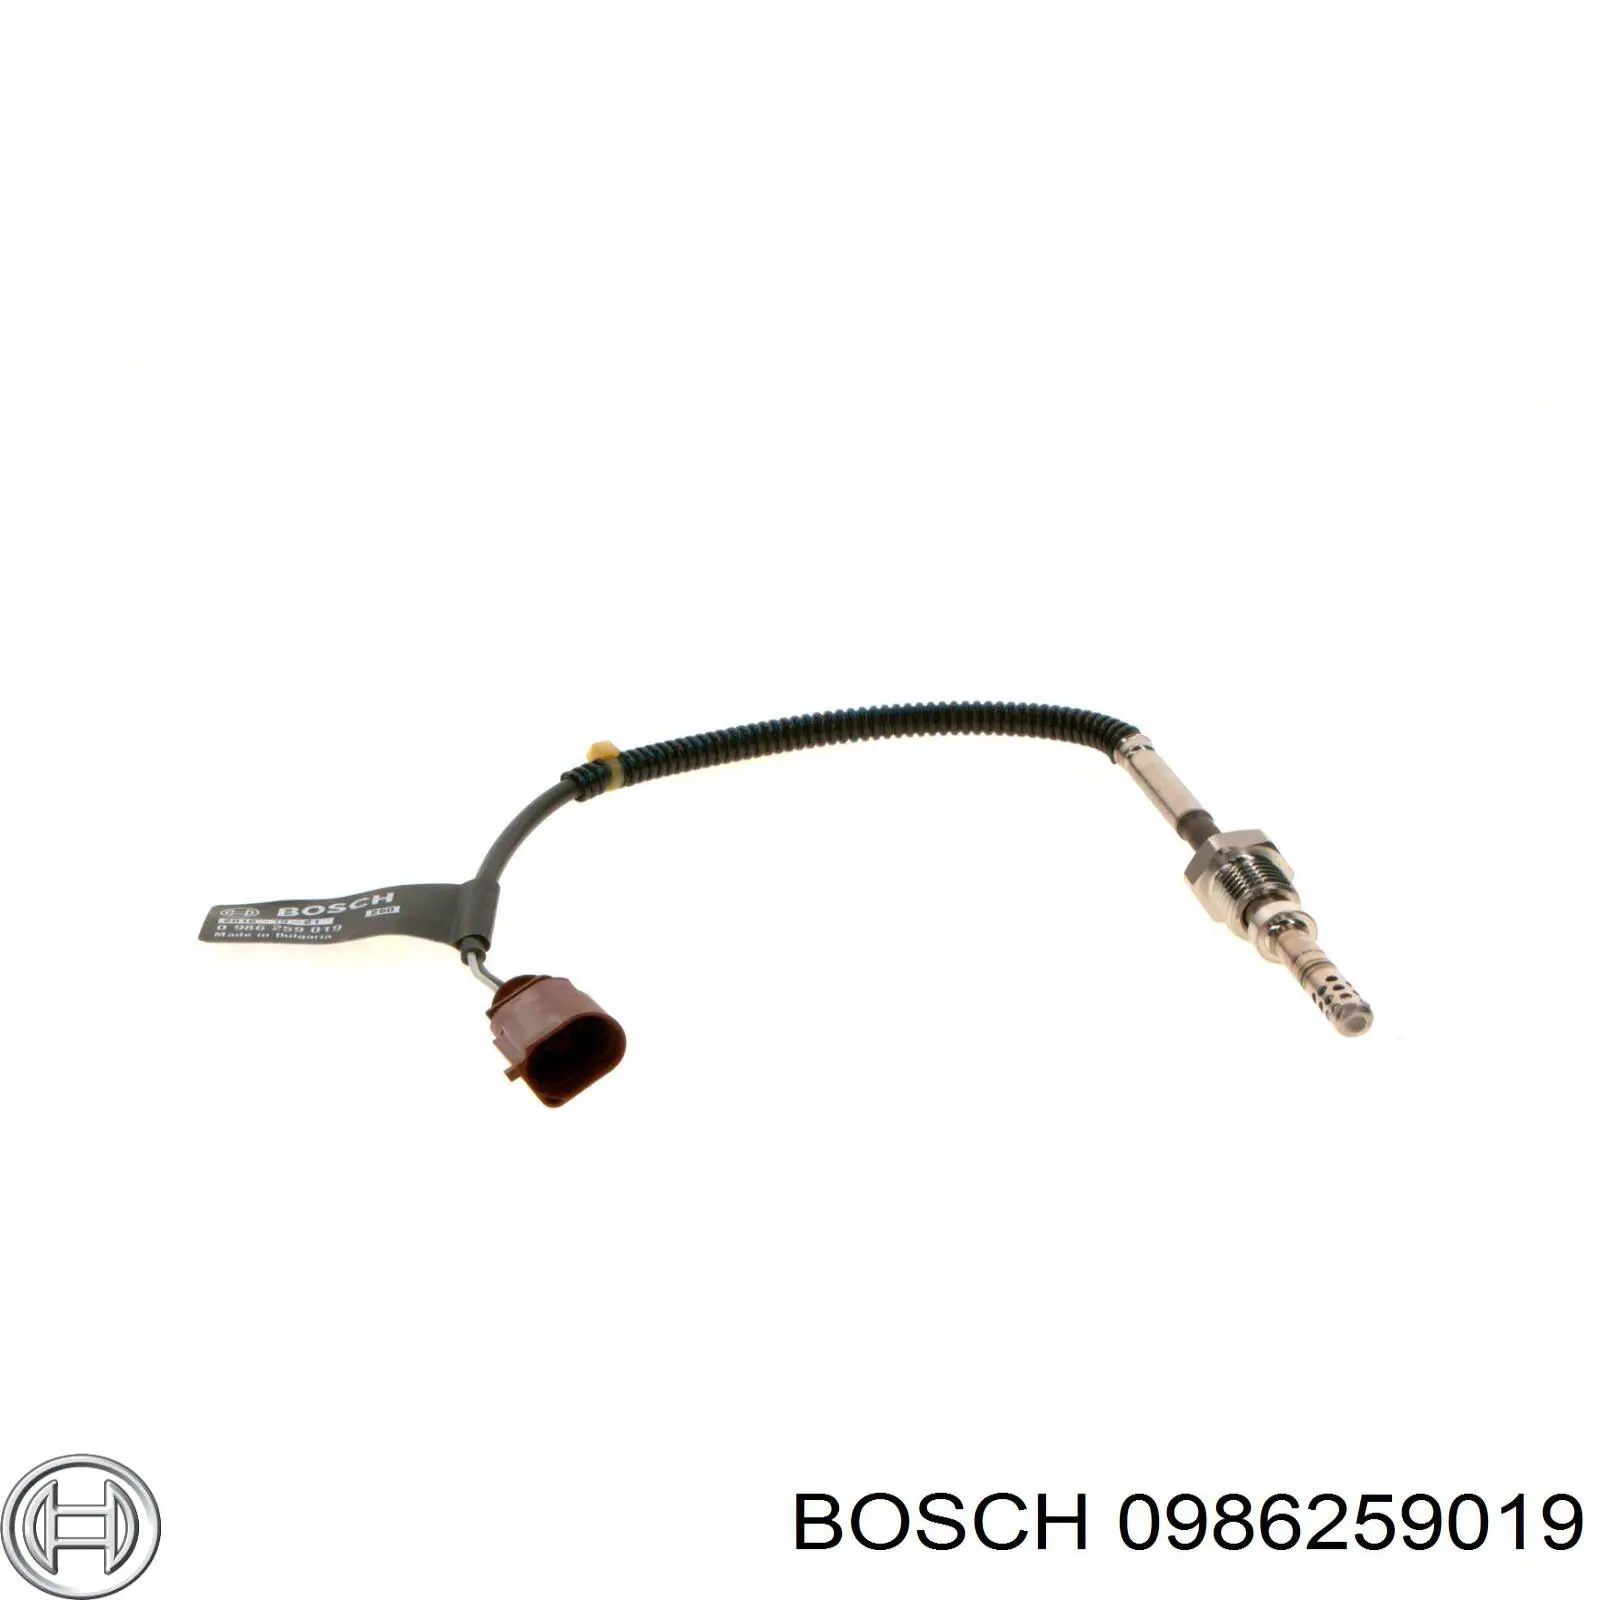 0986259019 Bosch sensor de temperatura dos gases de escape (ge, depois de filtro de partículas diesel)